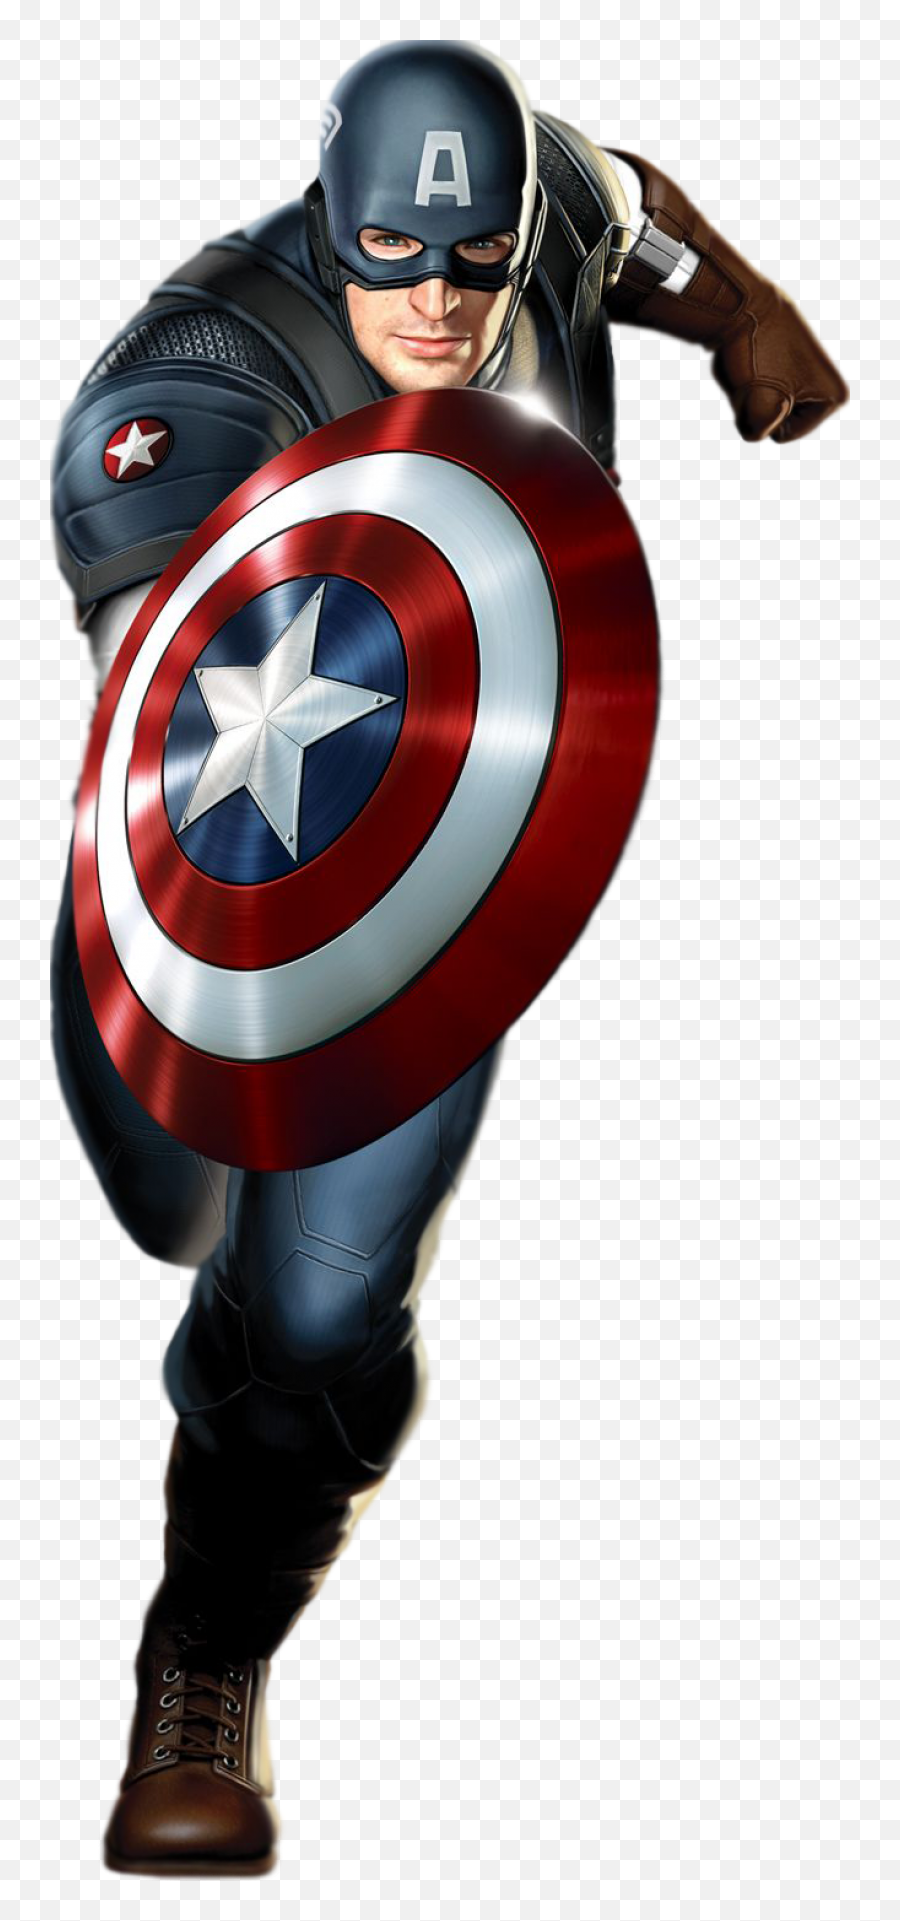 Captain America Transparent Png - Letras De Capitan America,Captain America Transparent Background